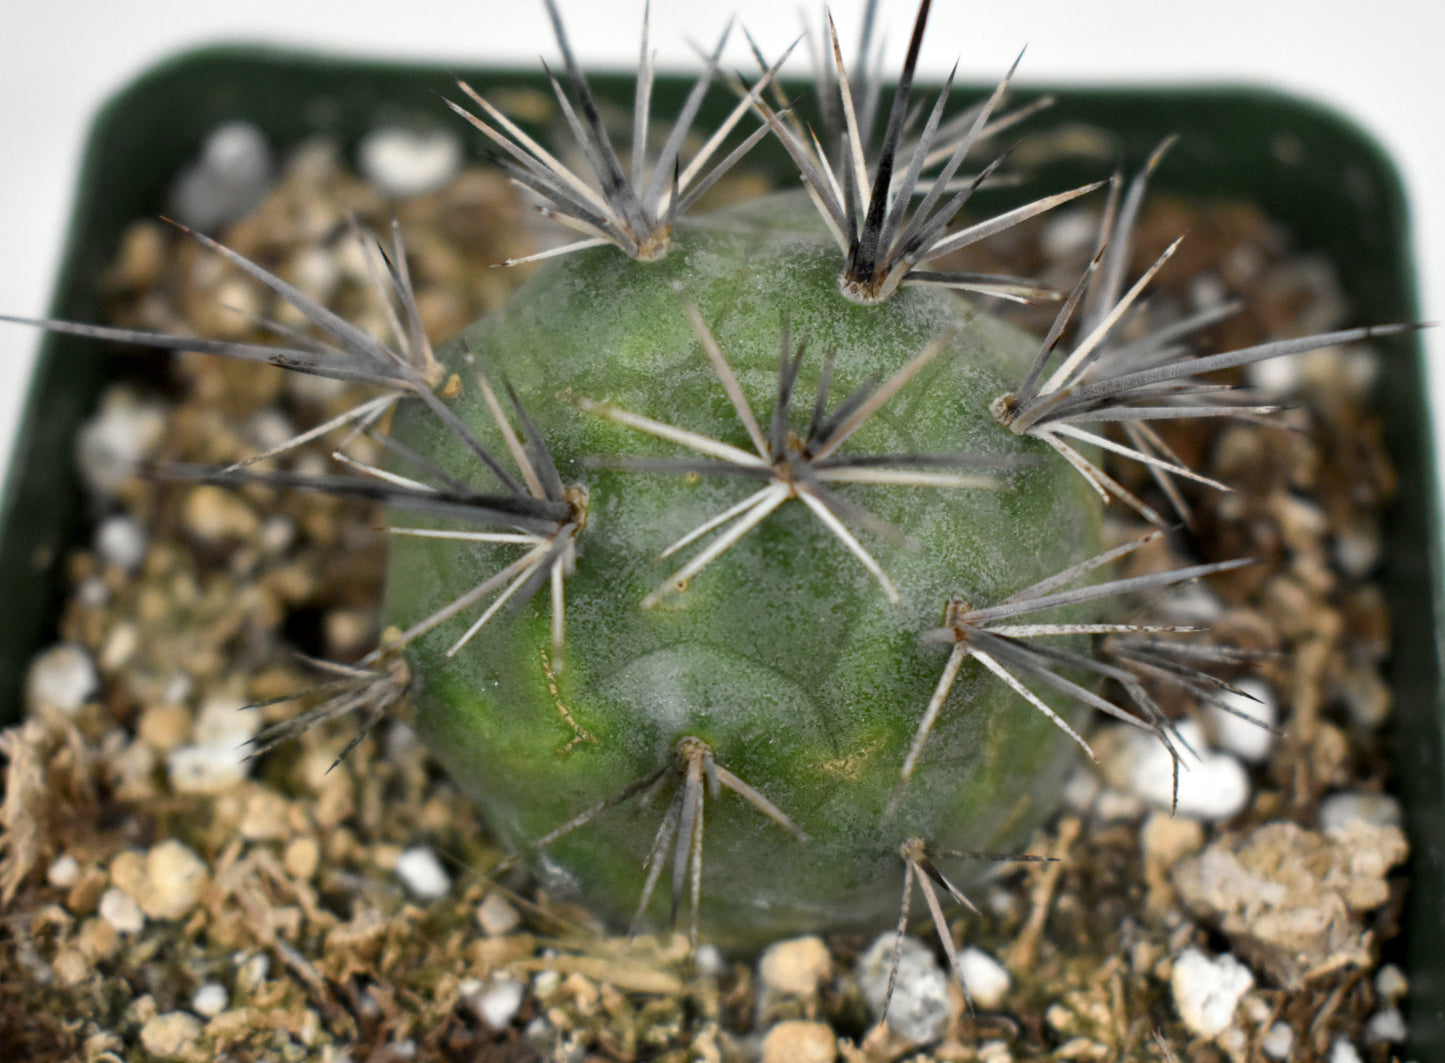 Tephrocactus alexanderi Live Cactus In 4 Inch